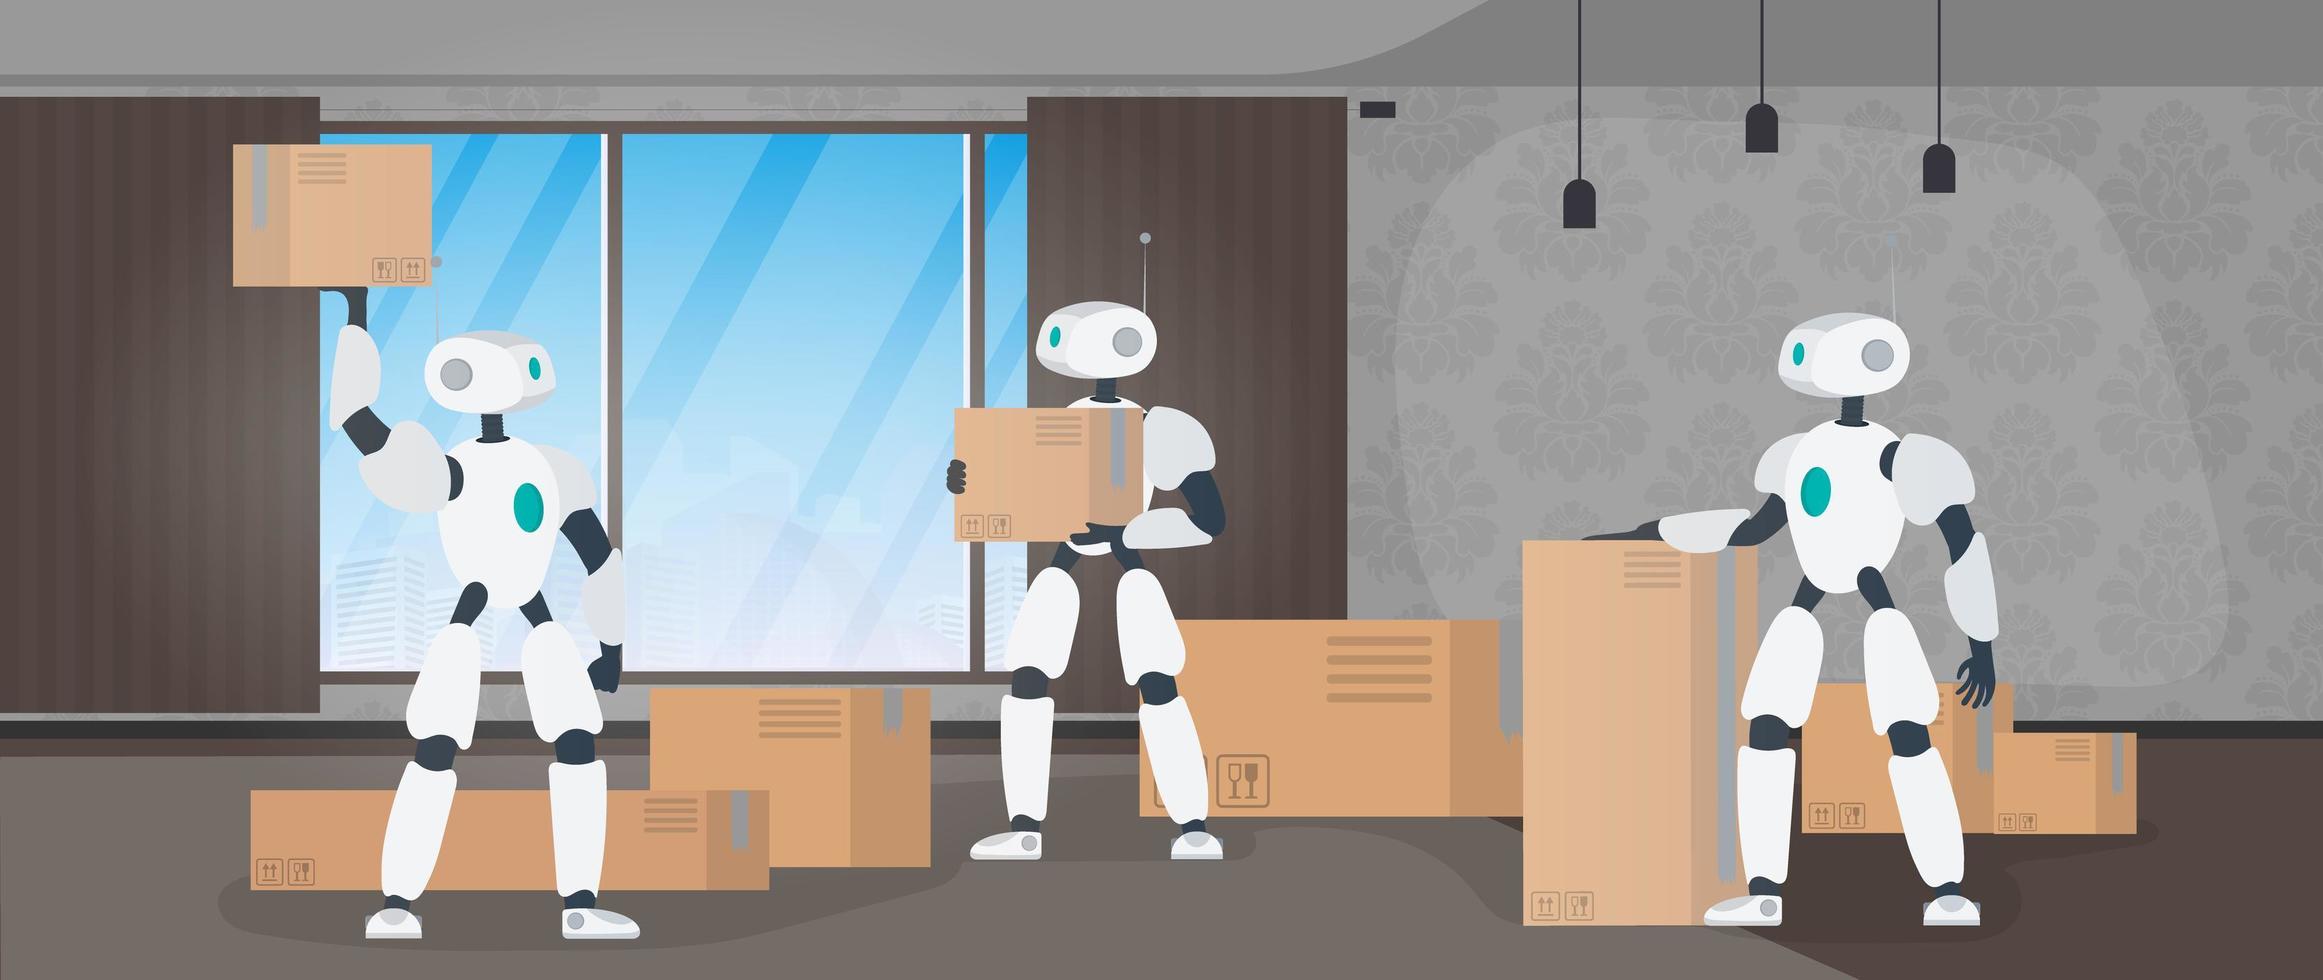 movendo banner para casa. mudar para um novo lugar. um robô branco segura uma caixa. caixas de papelão. o conceito de futuro, entrega e carregamento de mercadorias por meio de robôs. vetor. vetor